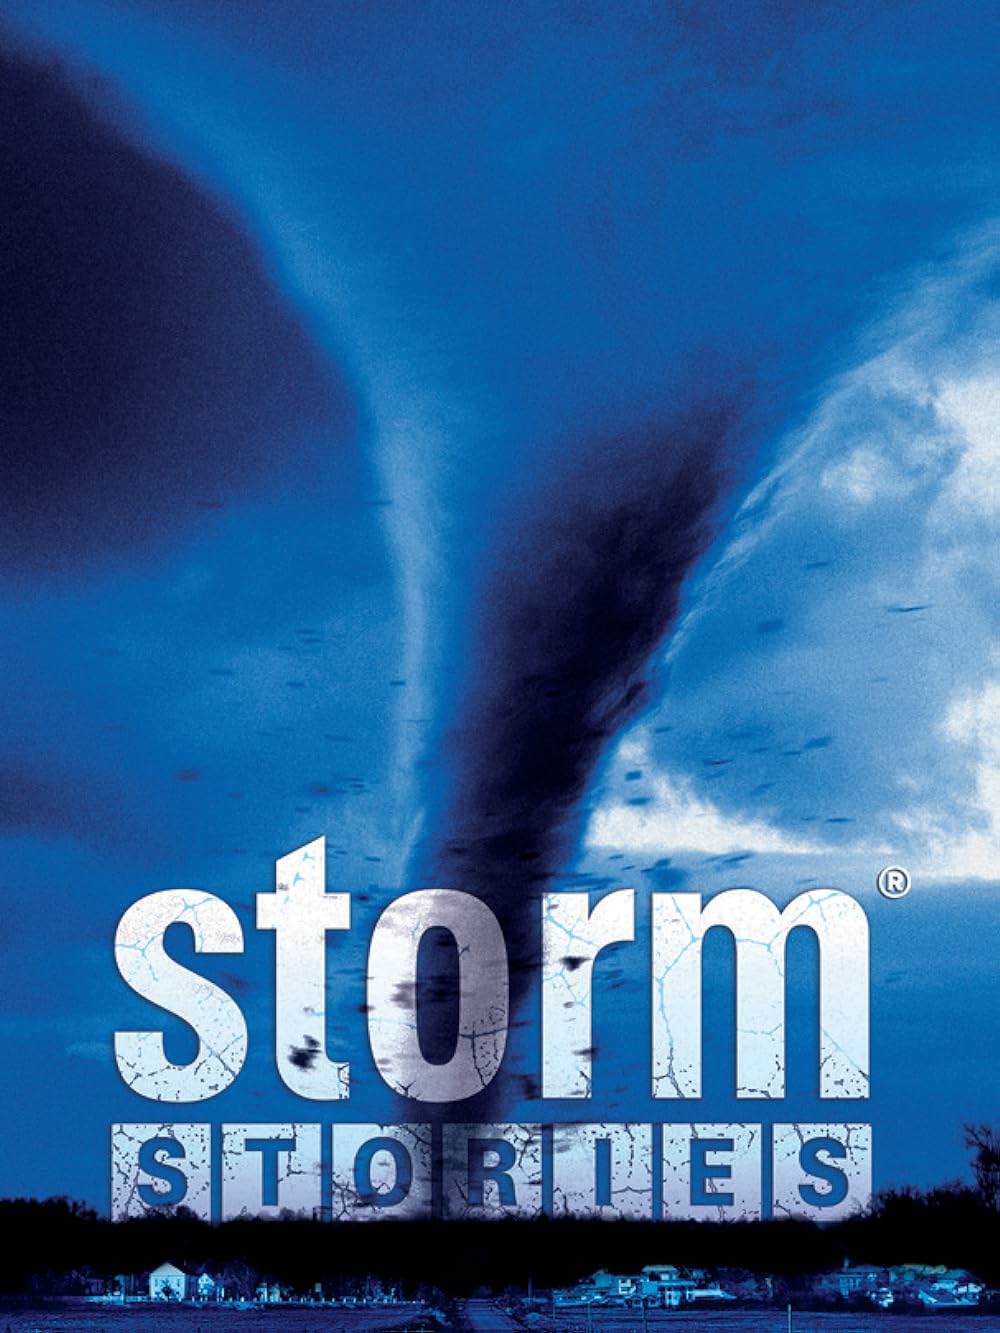 Storm Stories